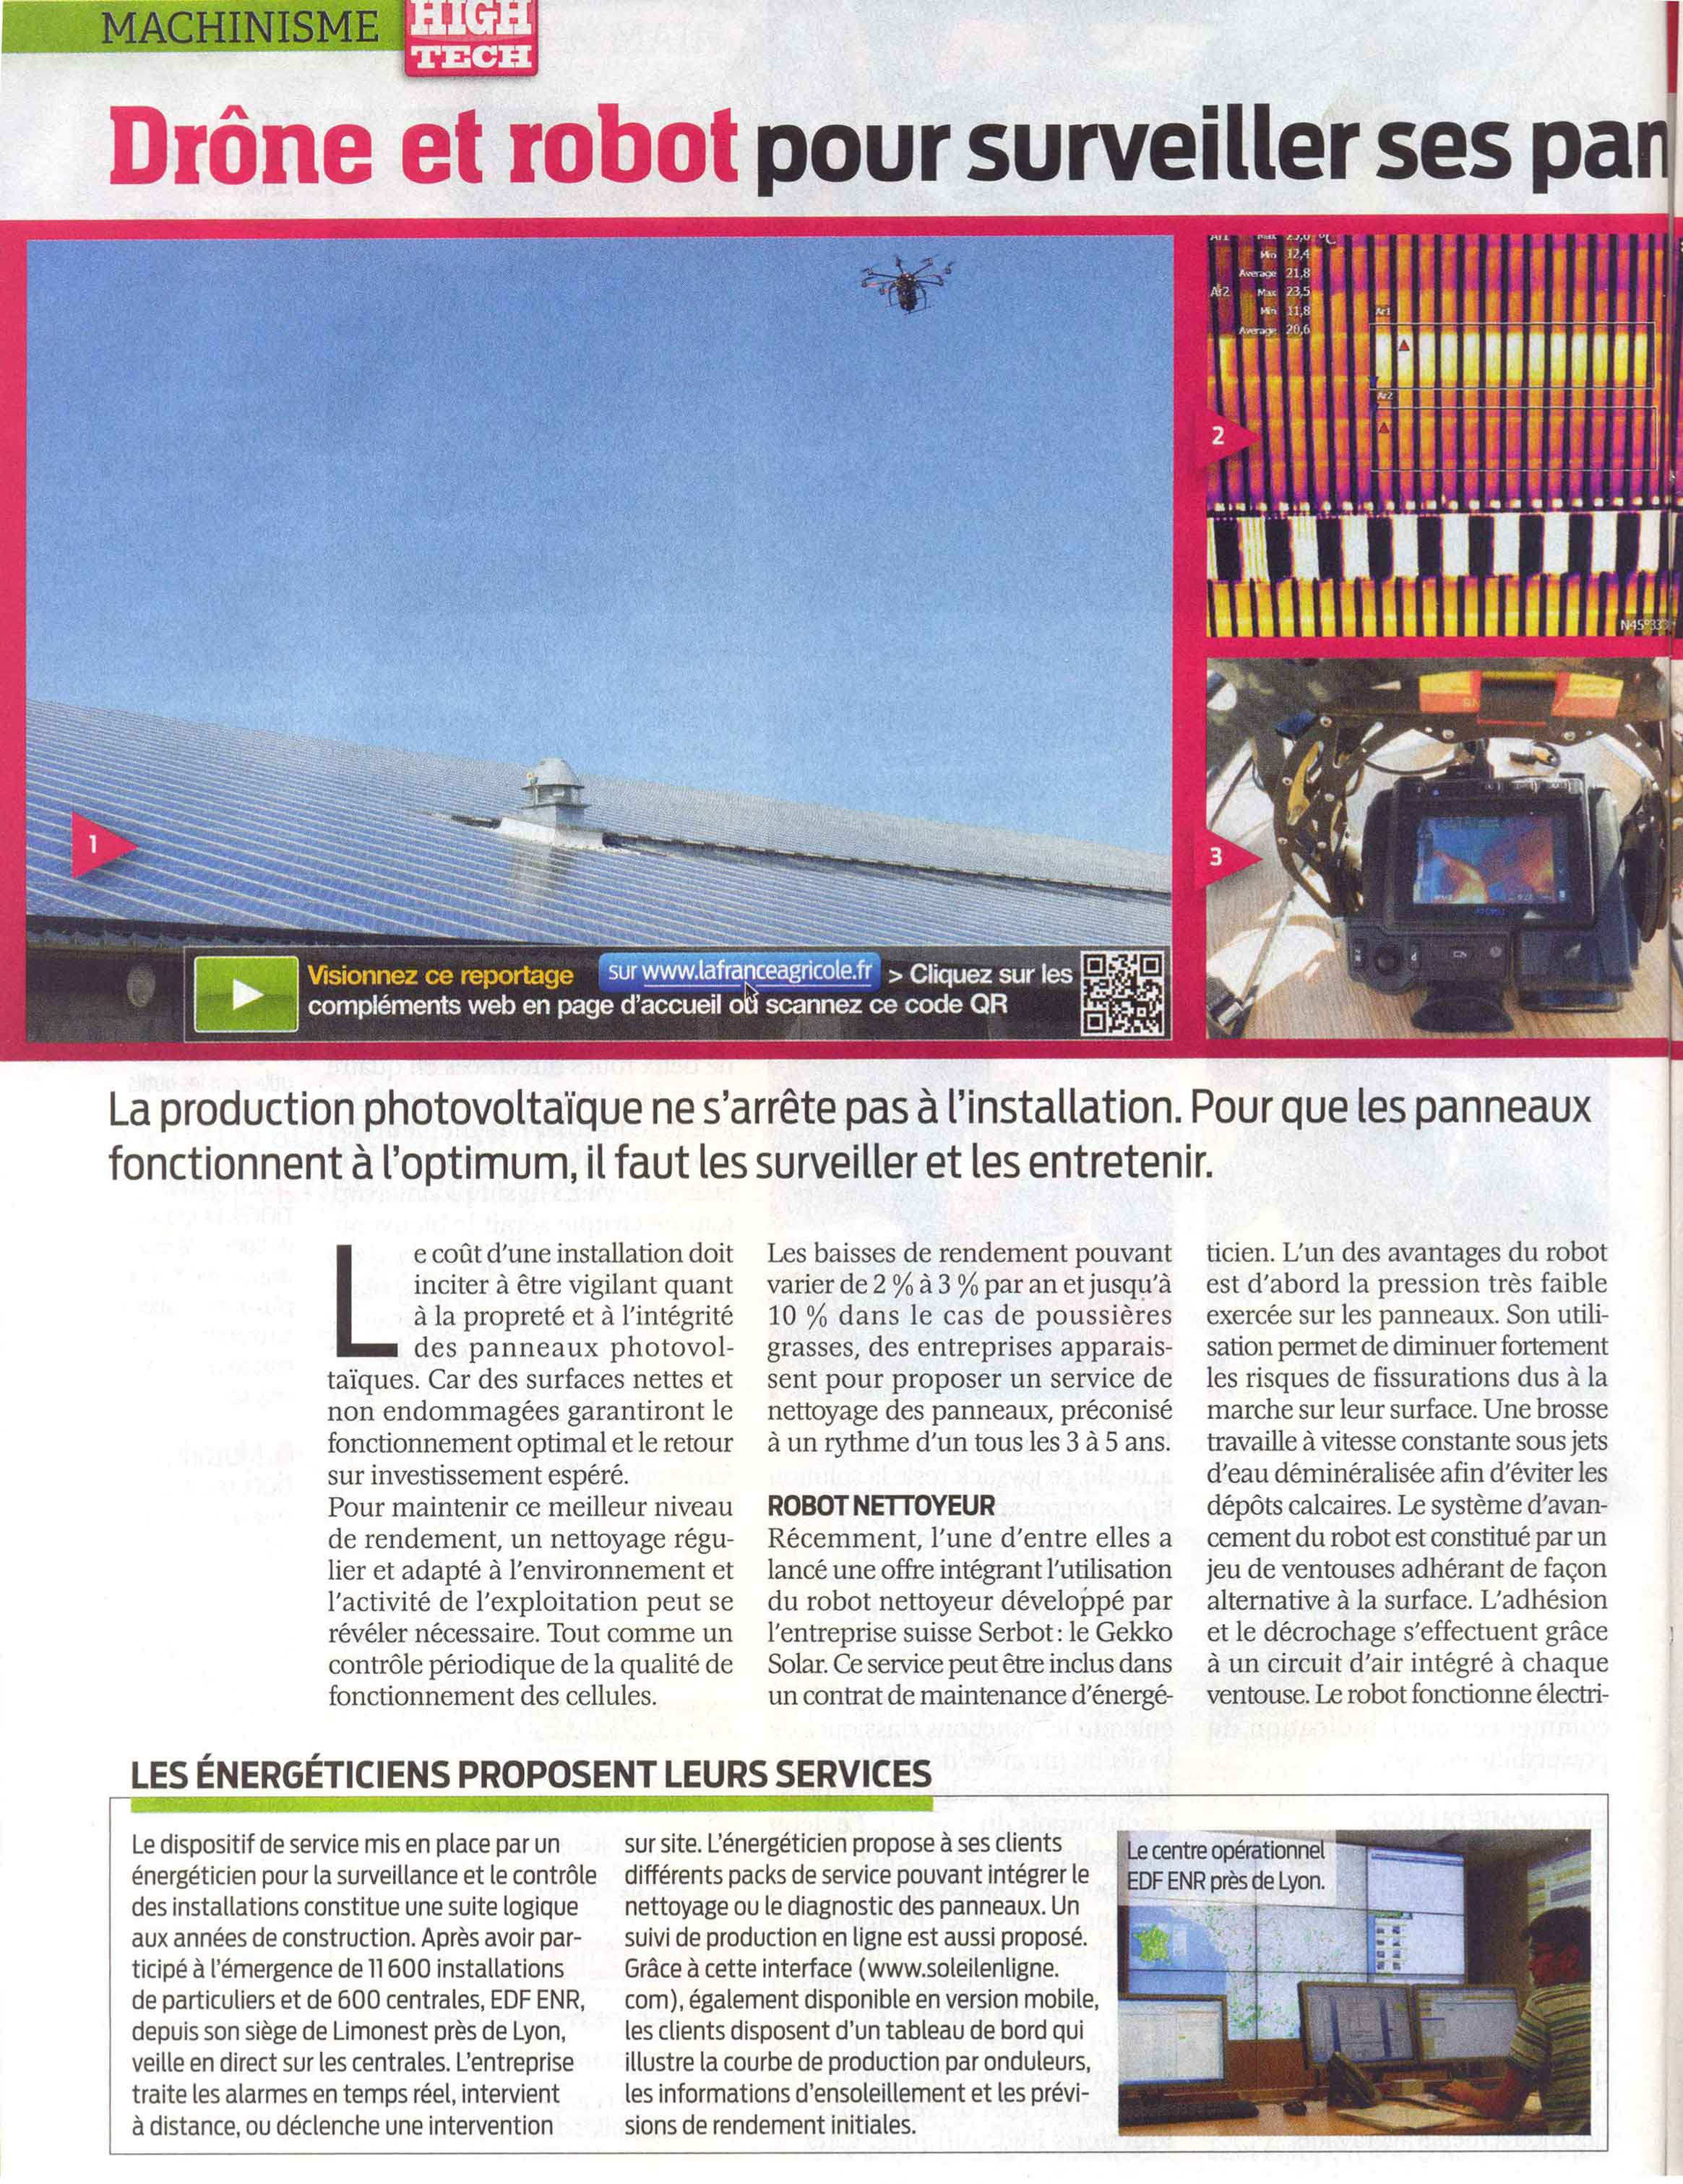 article de journal sur l'inspection des panneaux solaires par drone